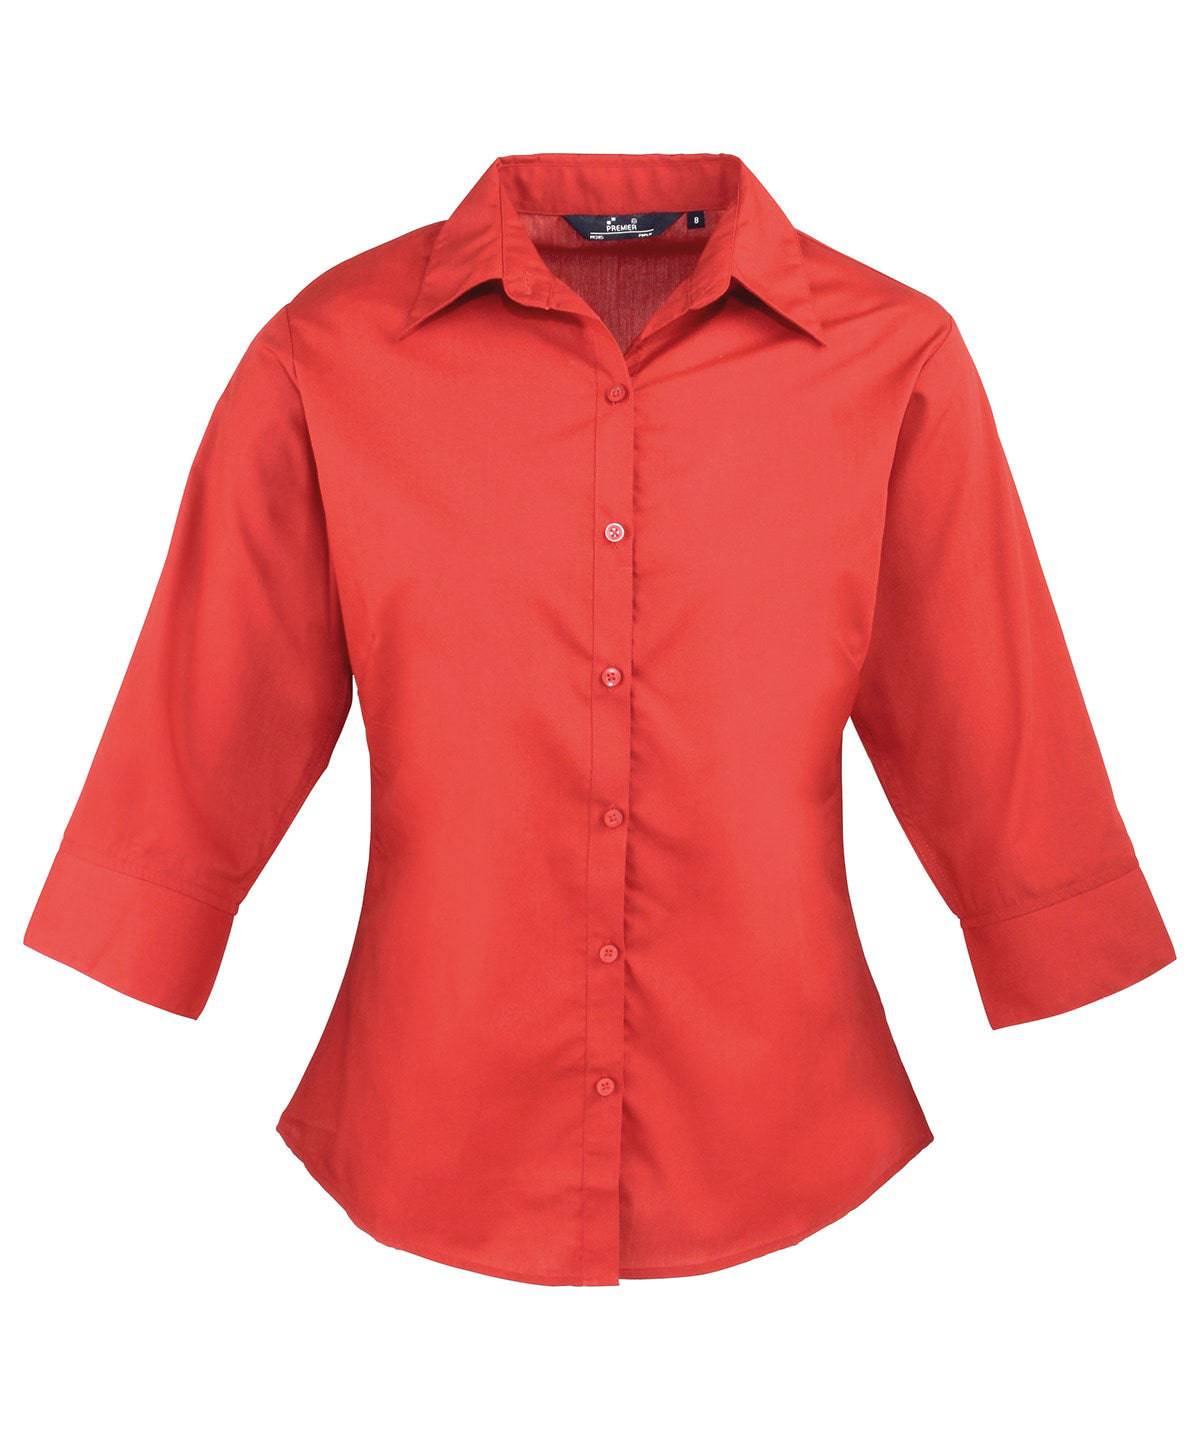 Red - Women's ¾ sleeve poplin blouse